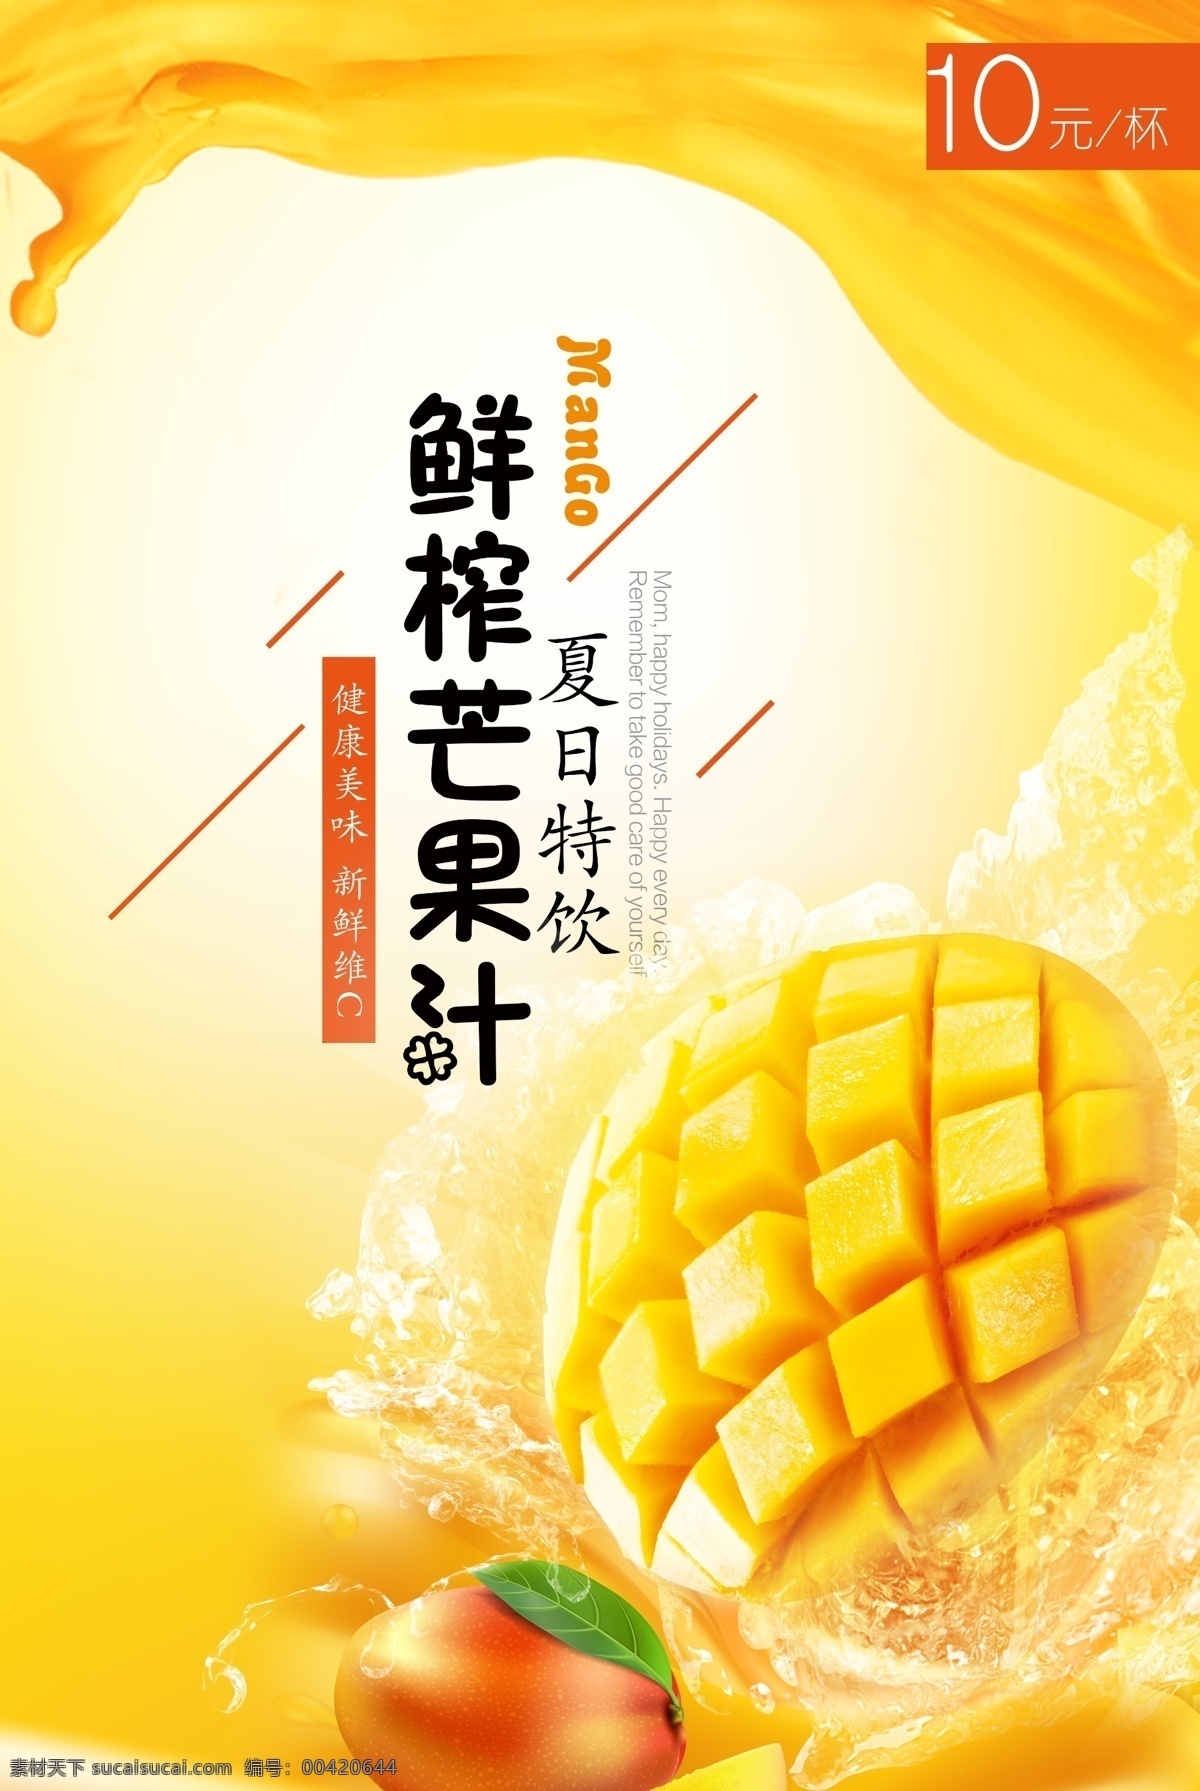 夏日 芒果汁 广告 芒果 苹果 新鲜 鲜榨